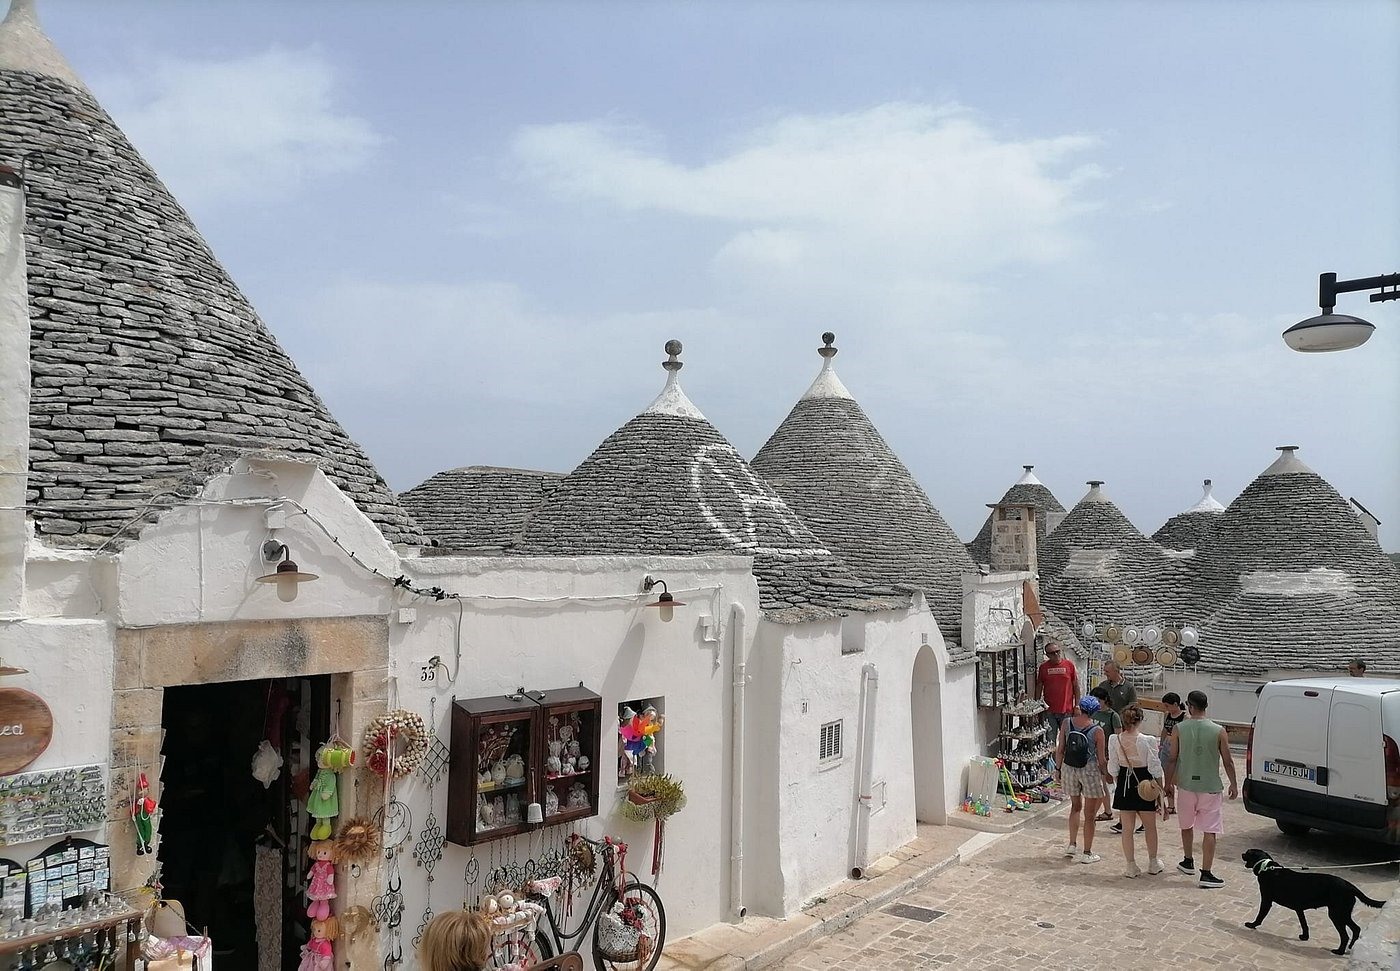 Trulli là một ngôi nhà nhỏ được xây dựng từ đá vôi địa phương, với những bức tường đá khô và mái hình nón đặc trưng.